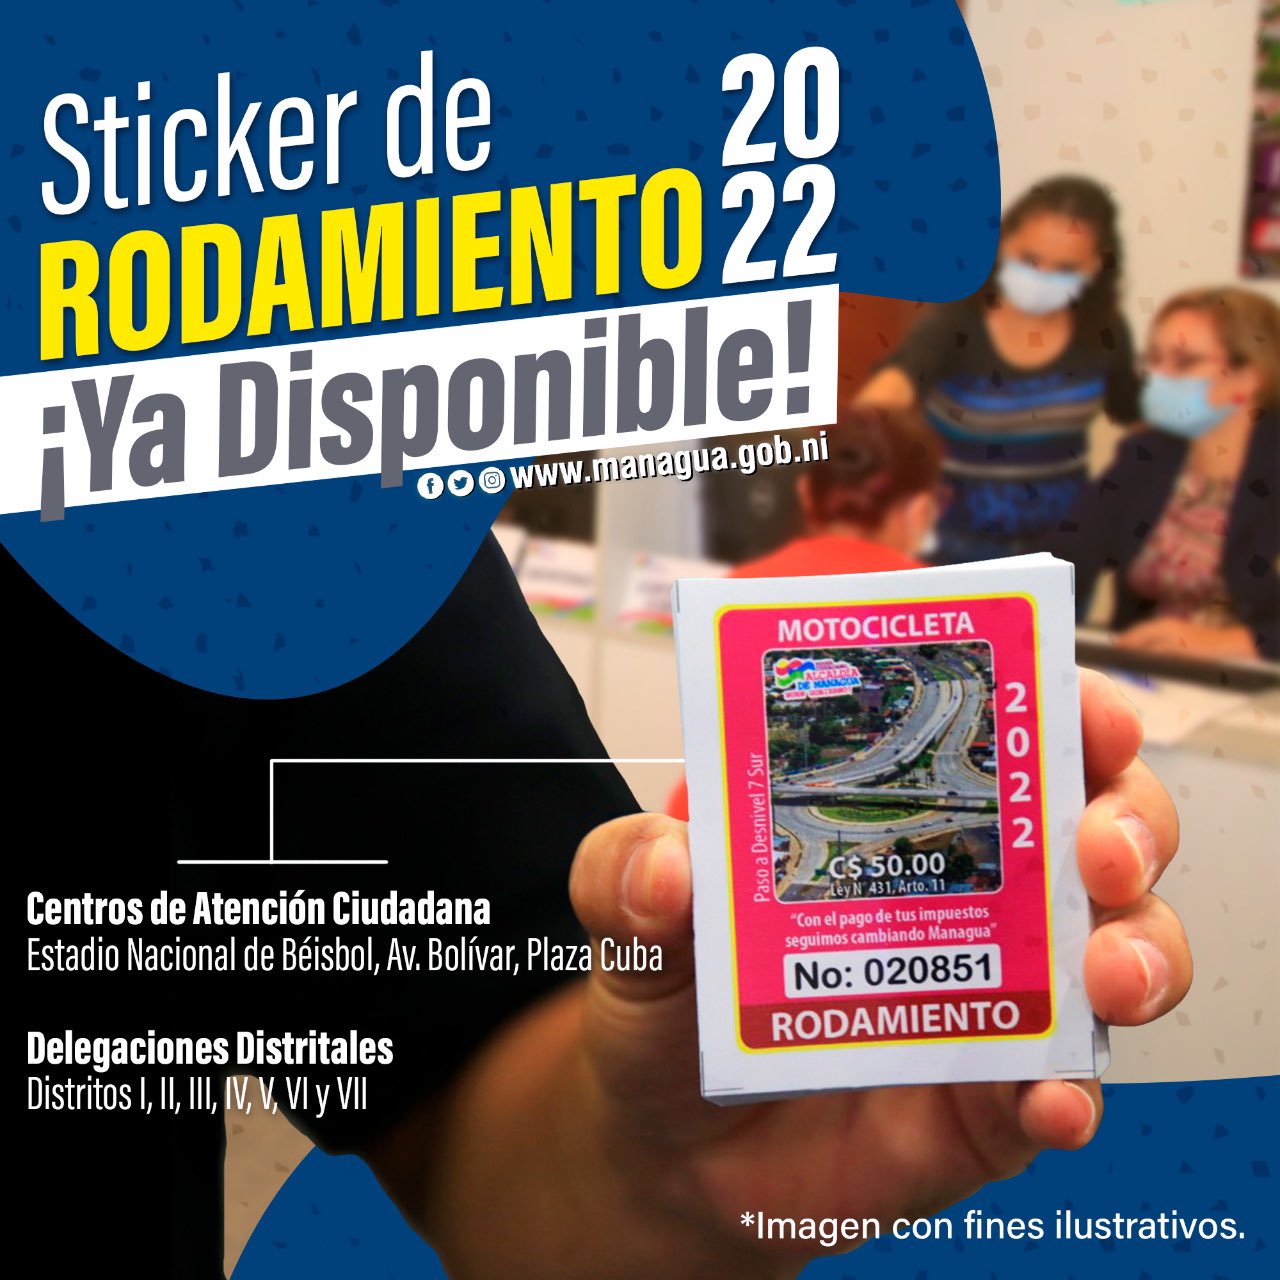 Anuncian sticker de rodamiento 2022 en managua